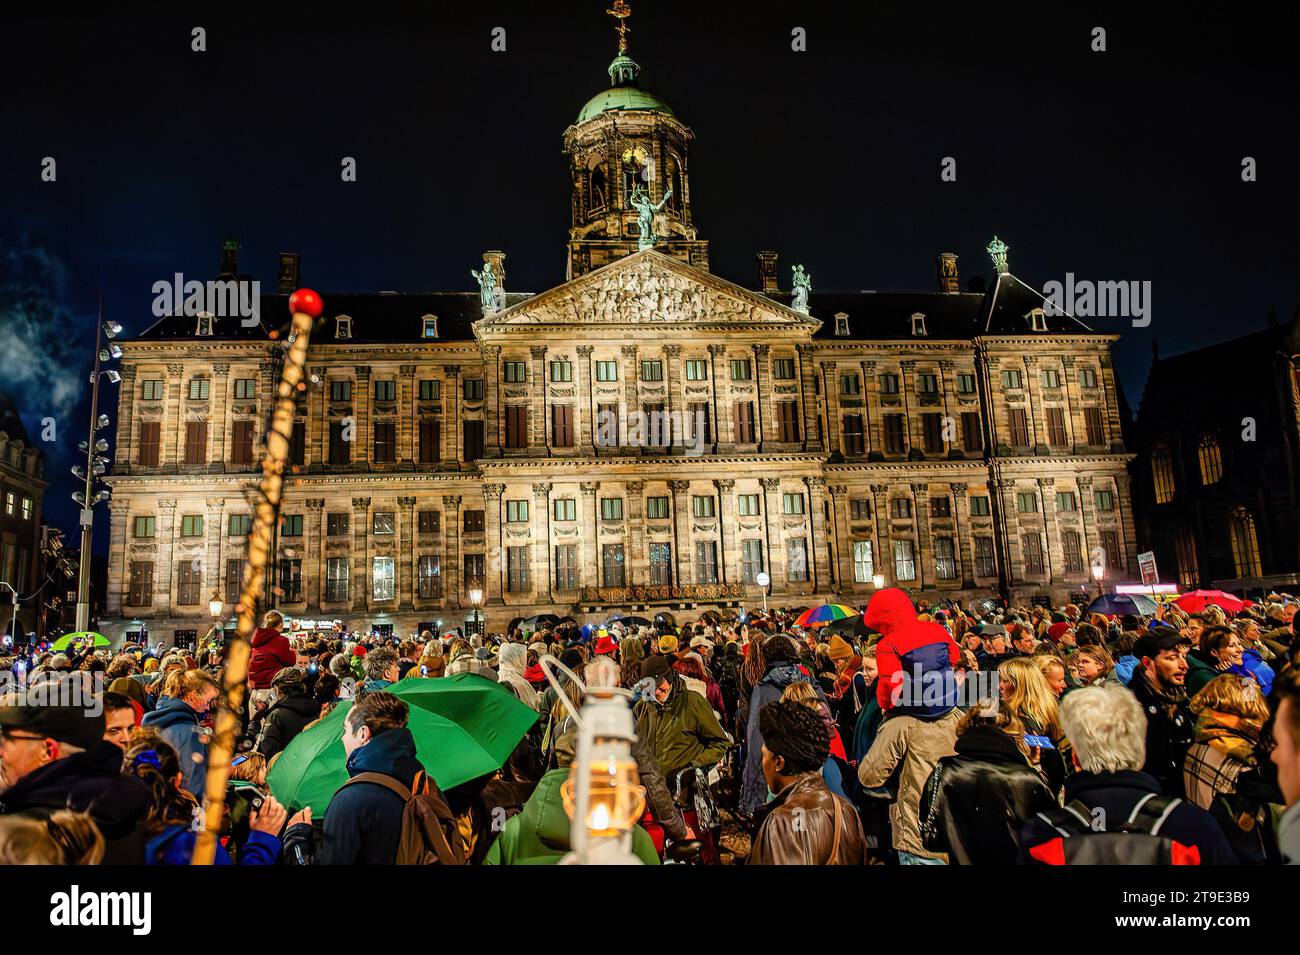 Una folla di manifestanti si riunisce in piazza con candele e luci a LED durante la dimostrazione. I manifestanti organizzano una manifestazione di solidarietà con musulmani e immigrati in seguito alla vittoria del partito politico di estrema destra PVV (Partito dalla libertà sotto il leader di estrema destra Geert Wilders) alle elezioni generali. I manifestanti si radunano contro le idee di Wilder, che hanno messo a rischio alcuni gruppi come musulmani e immigrati. Wilders avrà ancora bisogno che altri partiti si uniscano a lui in una coalizione per governare con il sostegno della maggioranza in parlamento. Foto Stock